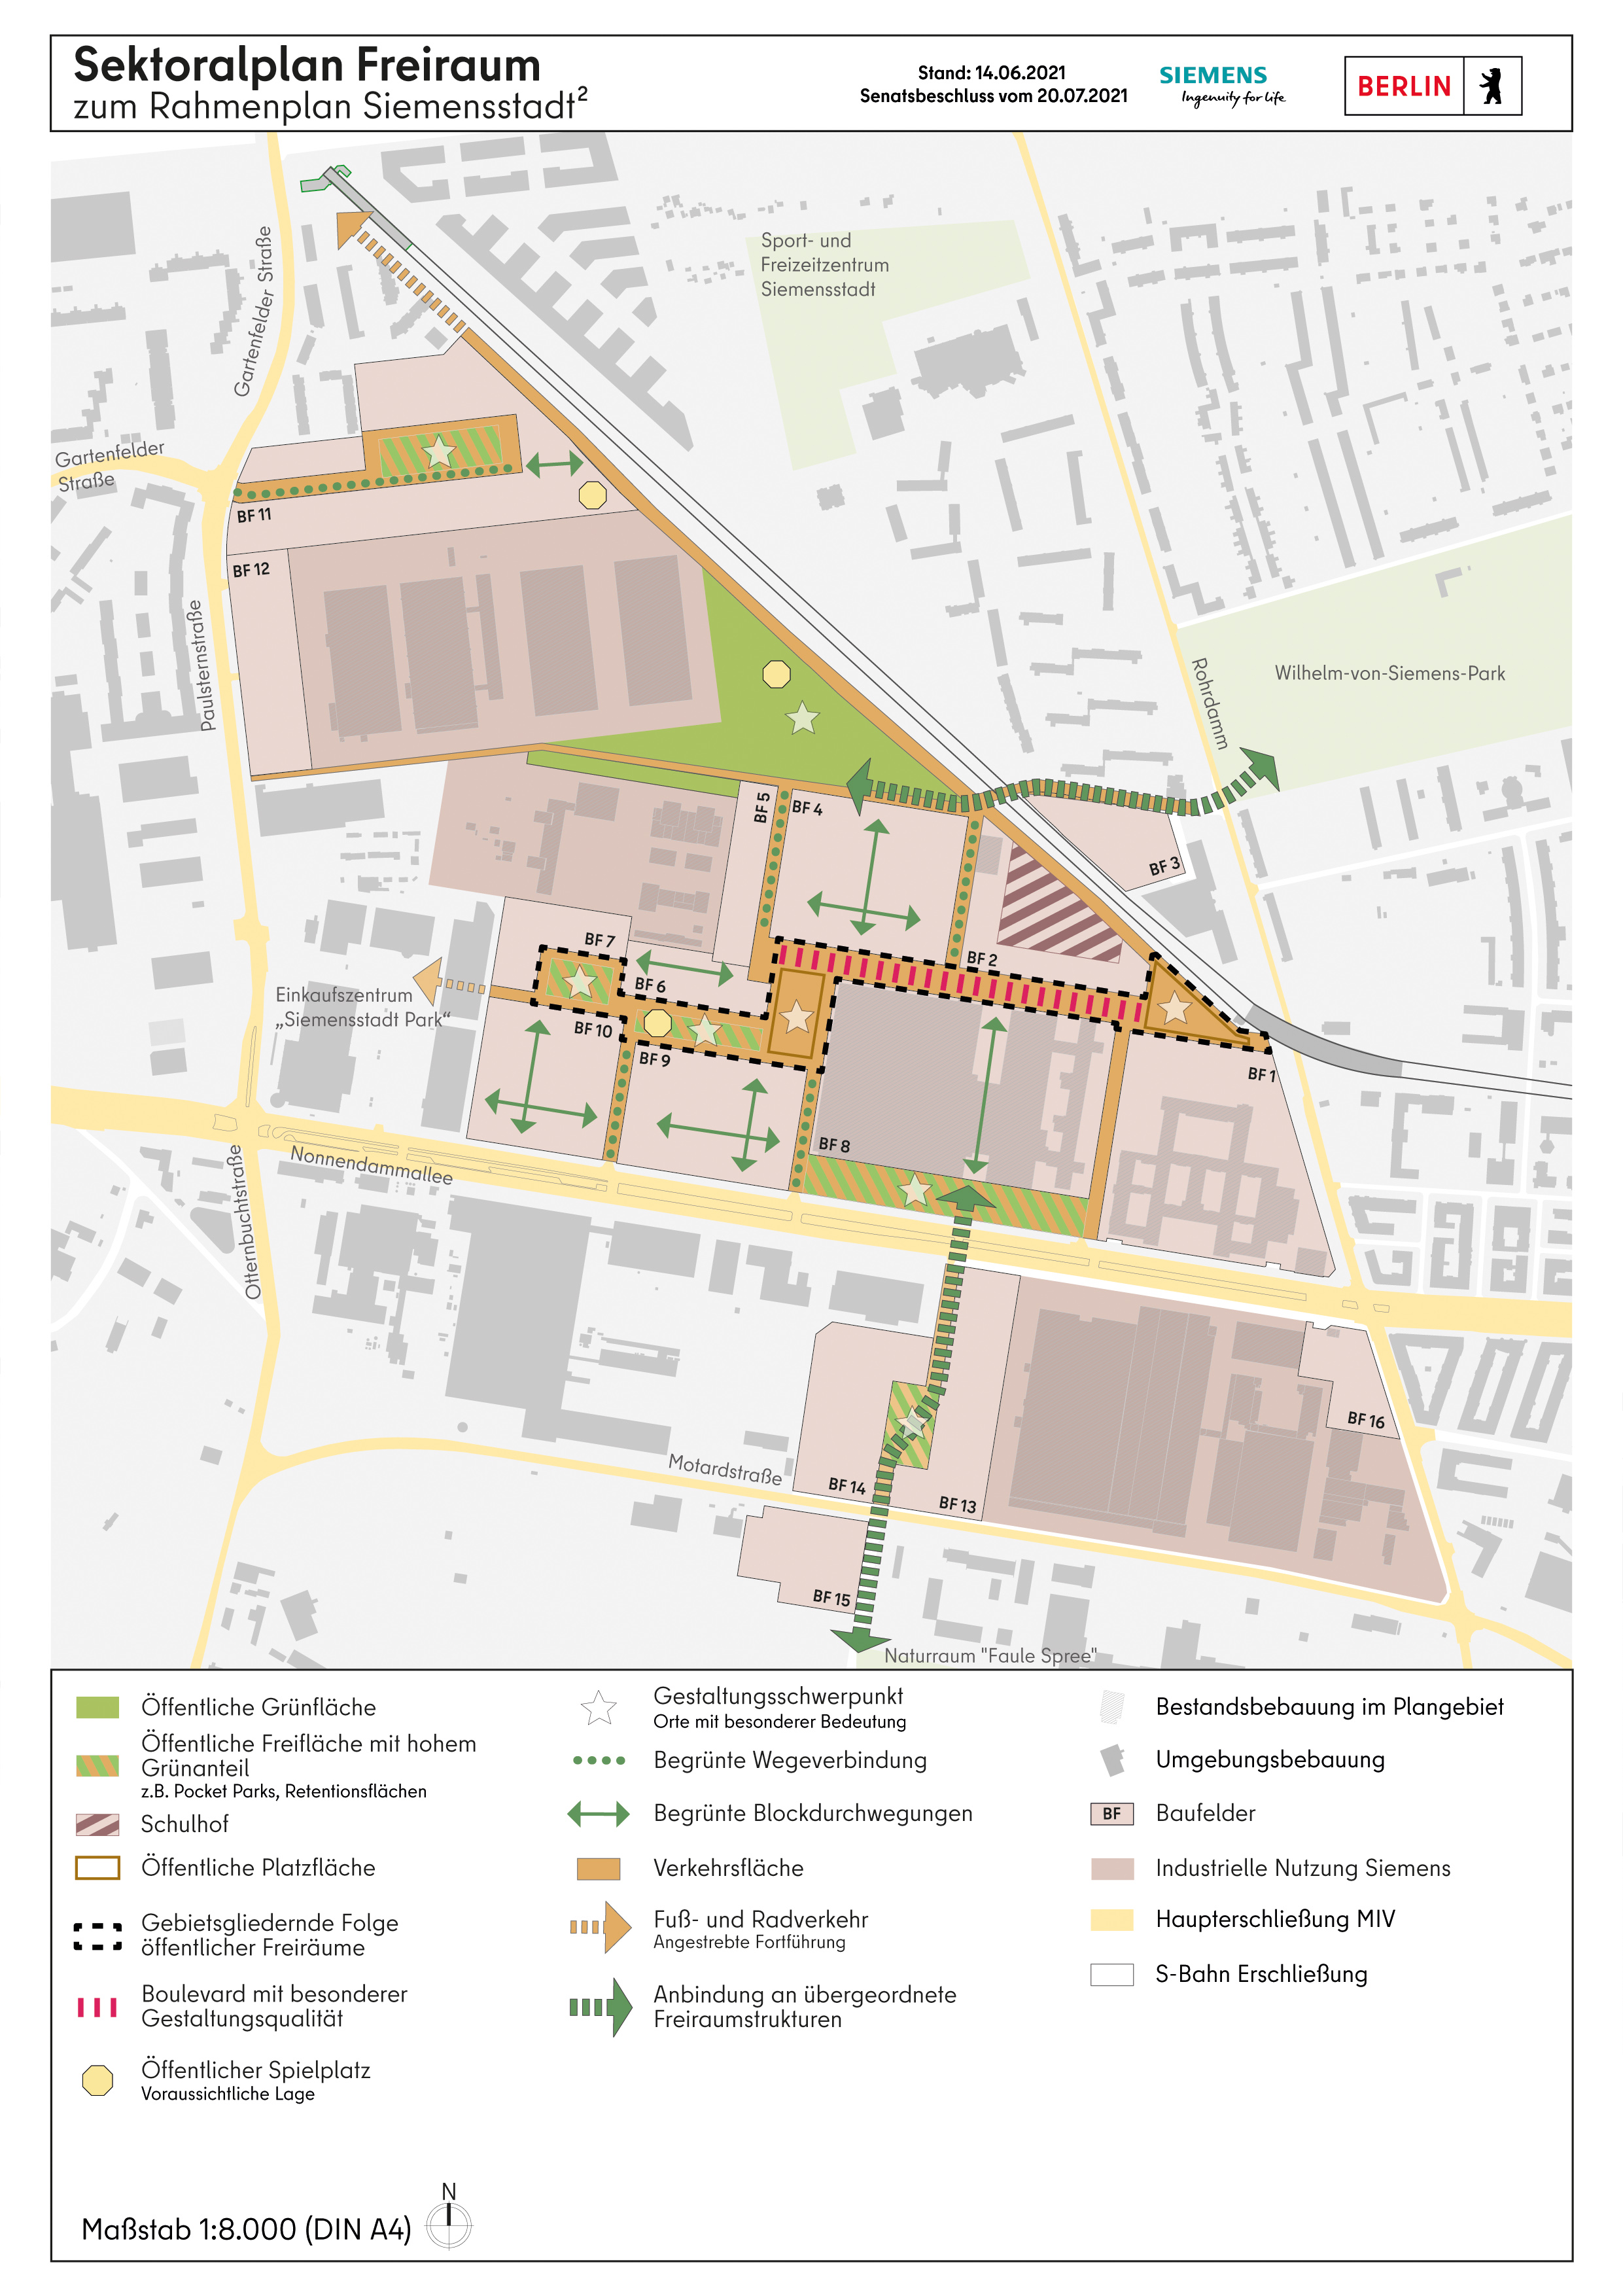 Sektoralplan Freiraum zum Rahmenplan Siemensstadt²